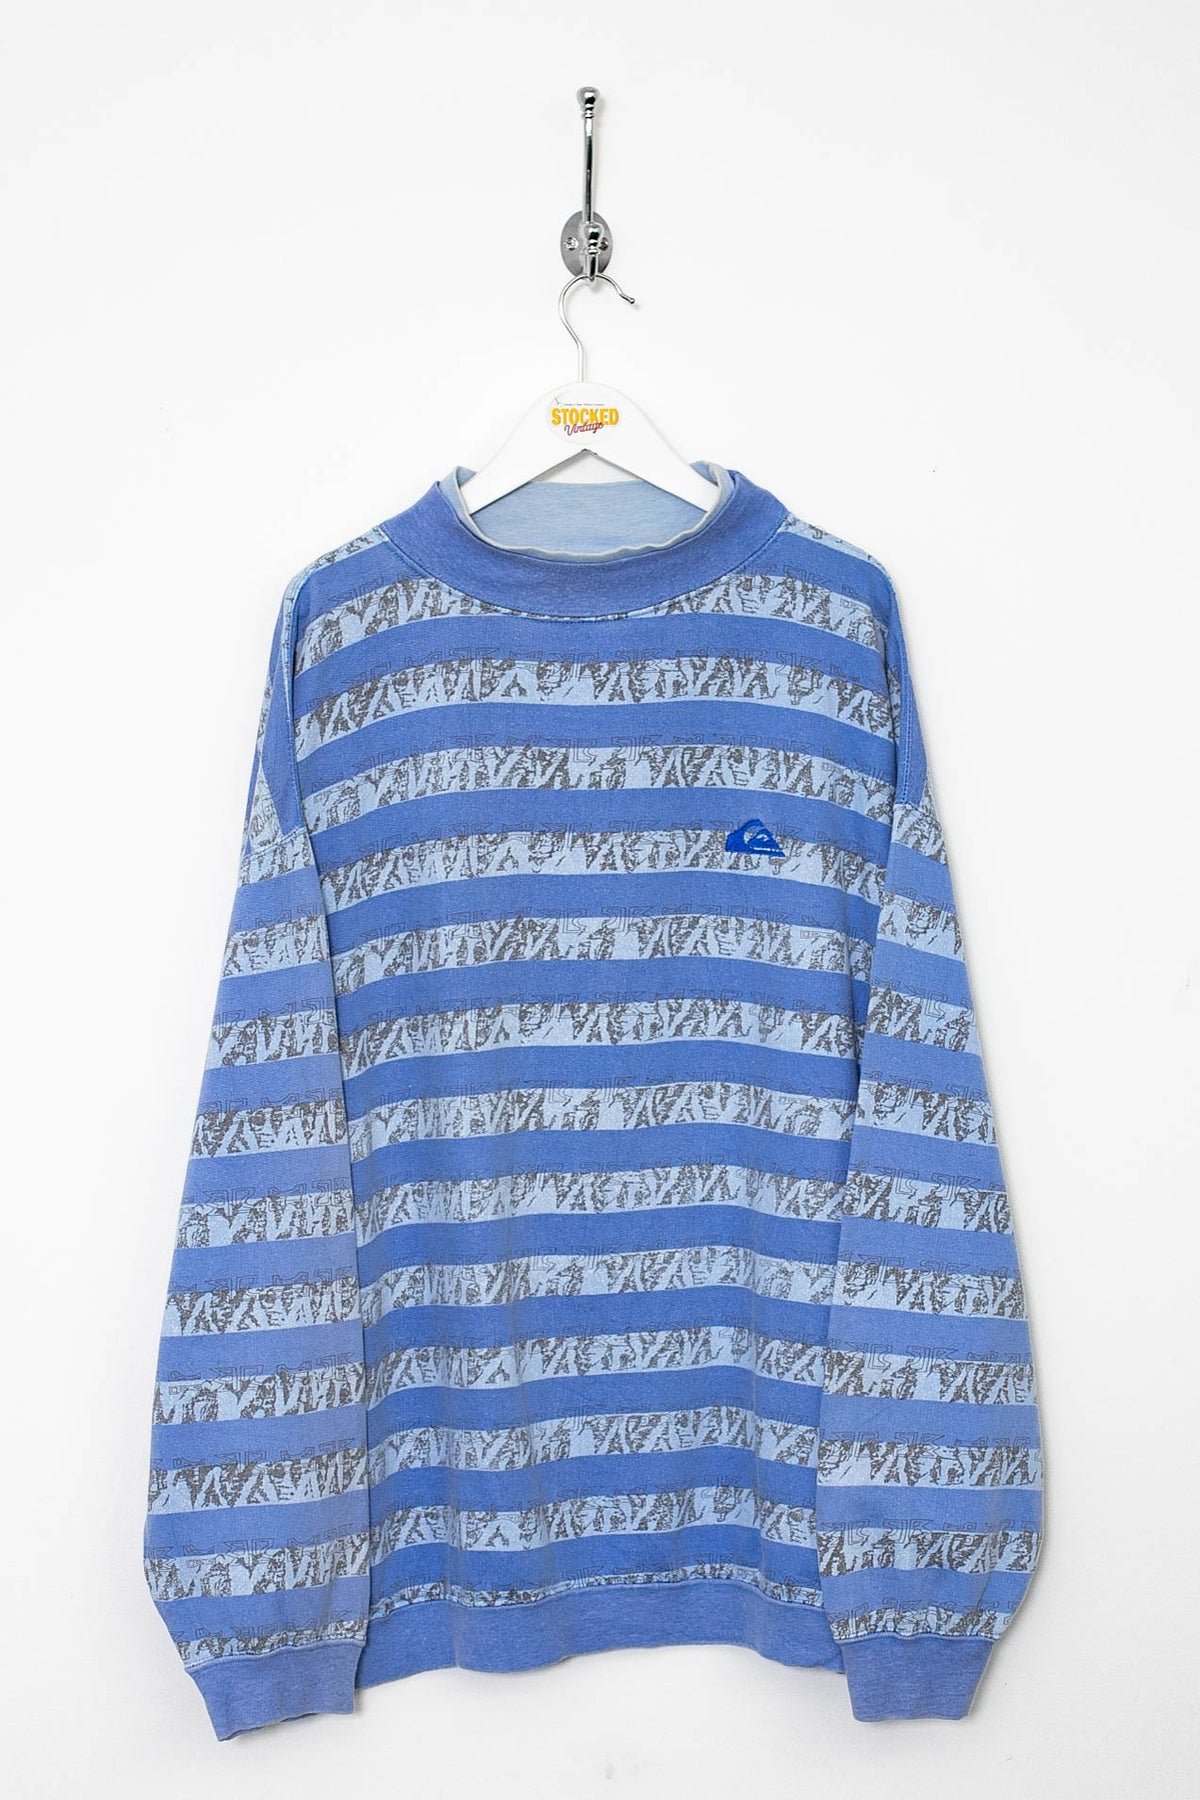 Rare 90s Quicksilver Sweatshirt (XL)